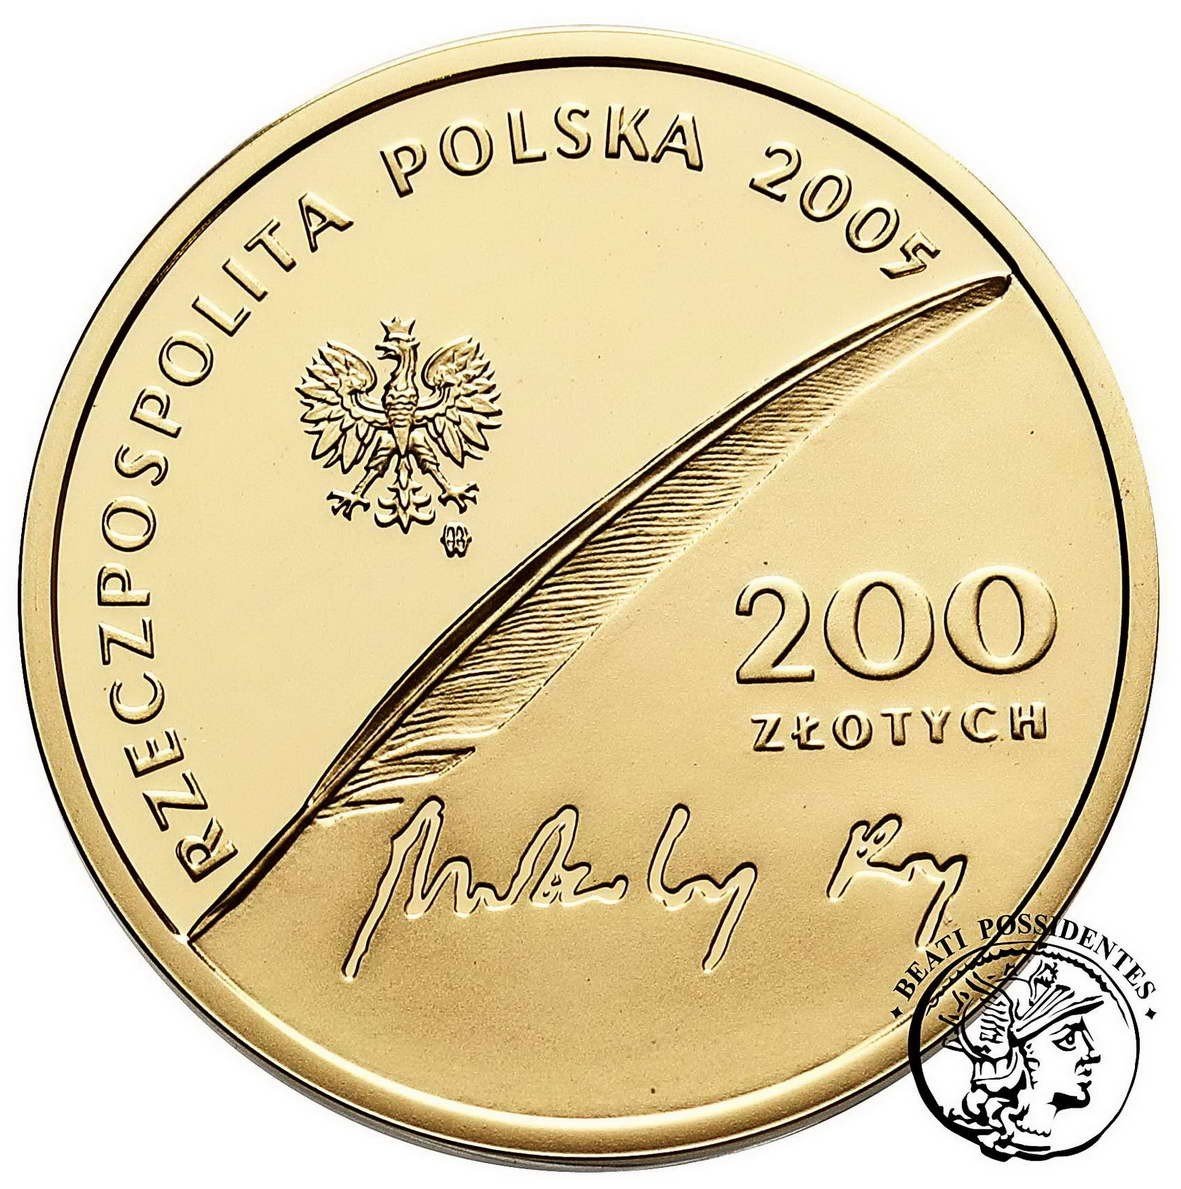 Polska III RP 200 złotych 2005 Mikołaj Rej st.L